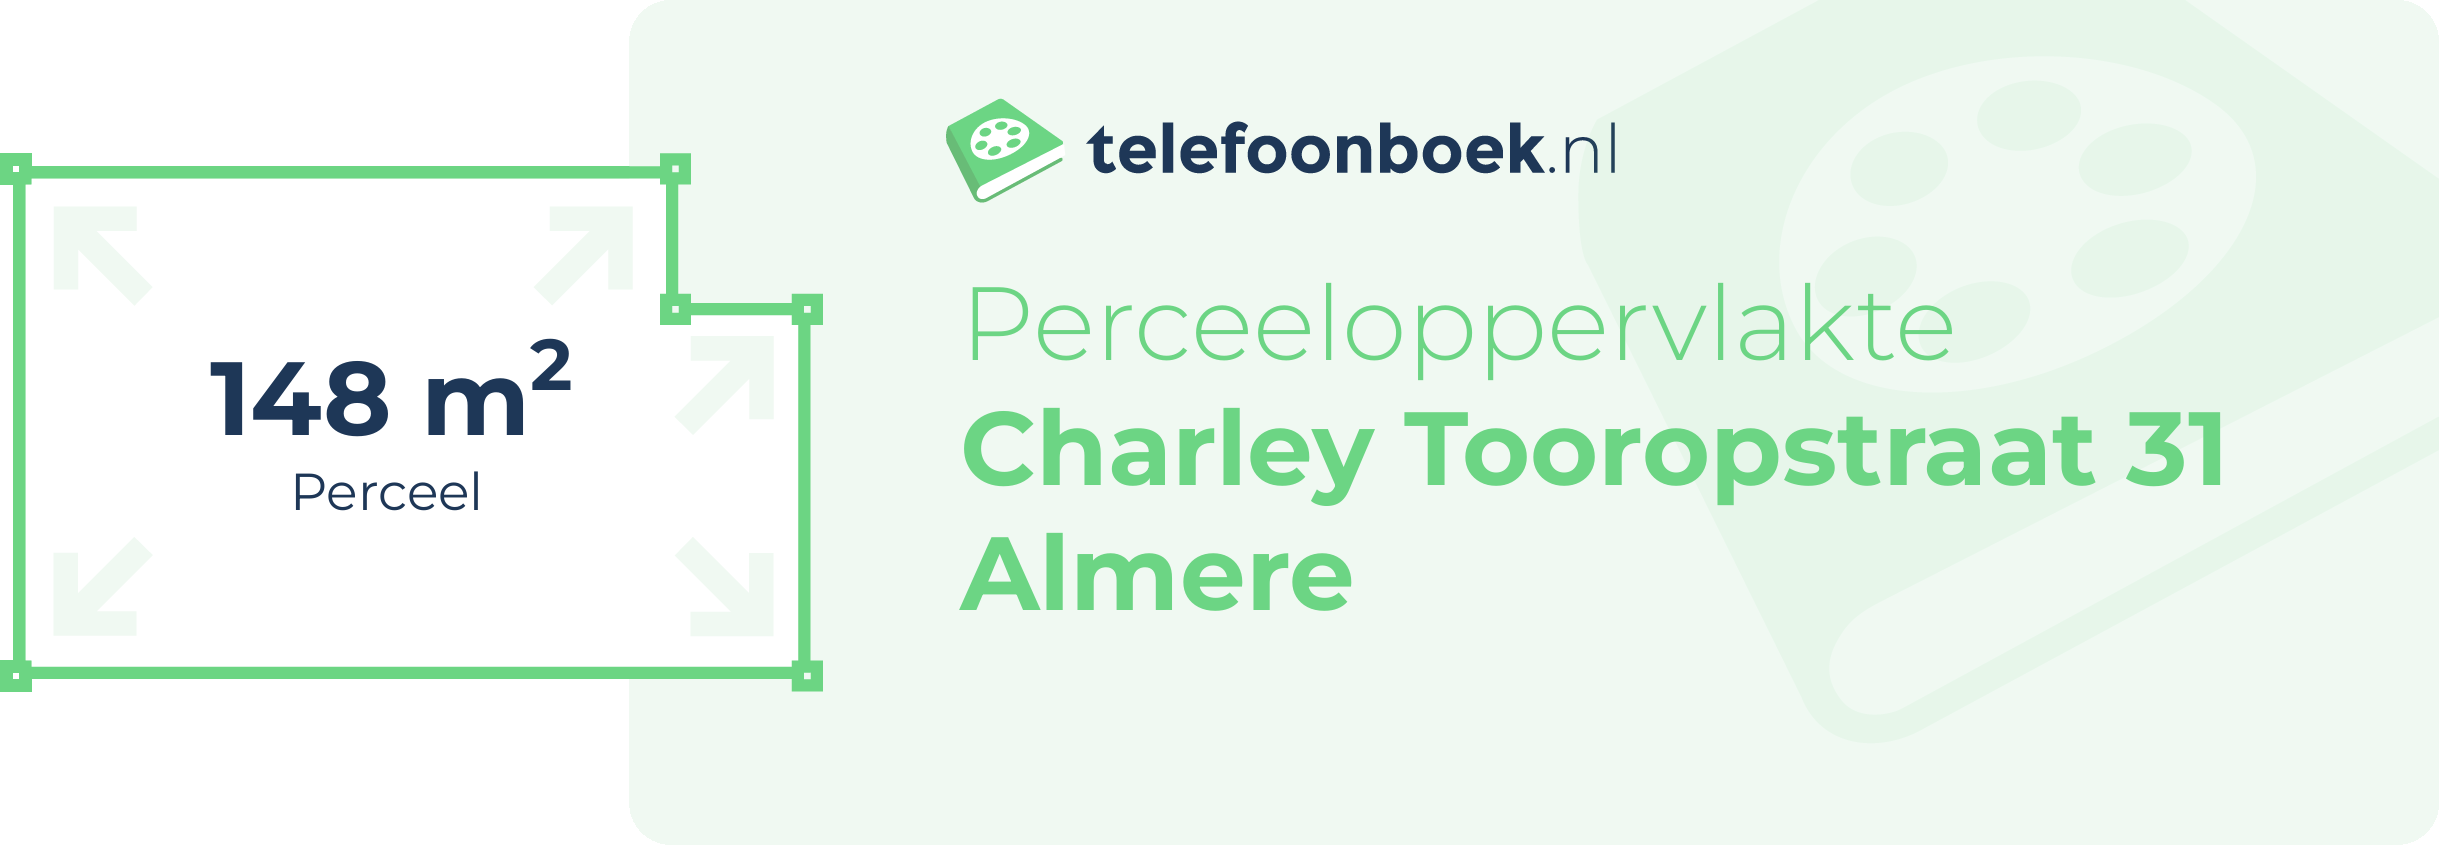 Perceeloppervlakte Charley Tooropstraat 31 Almere